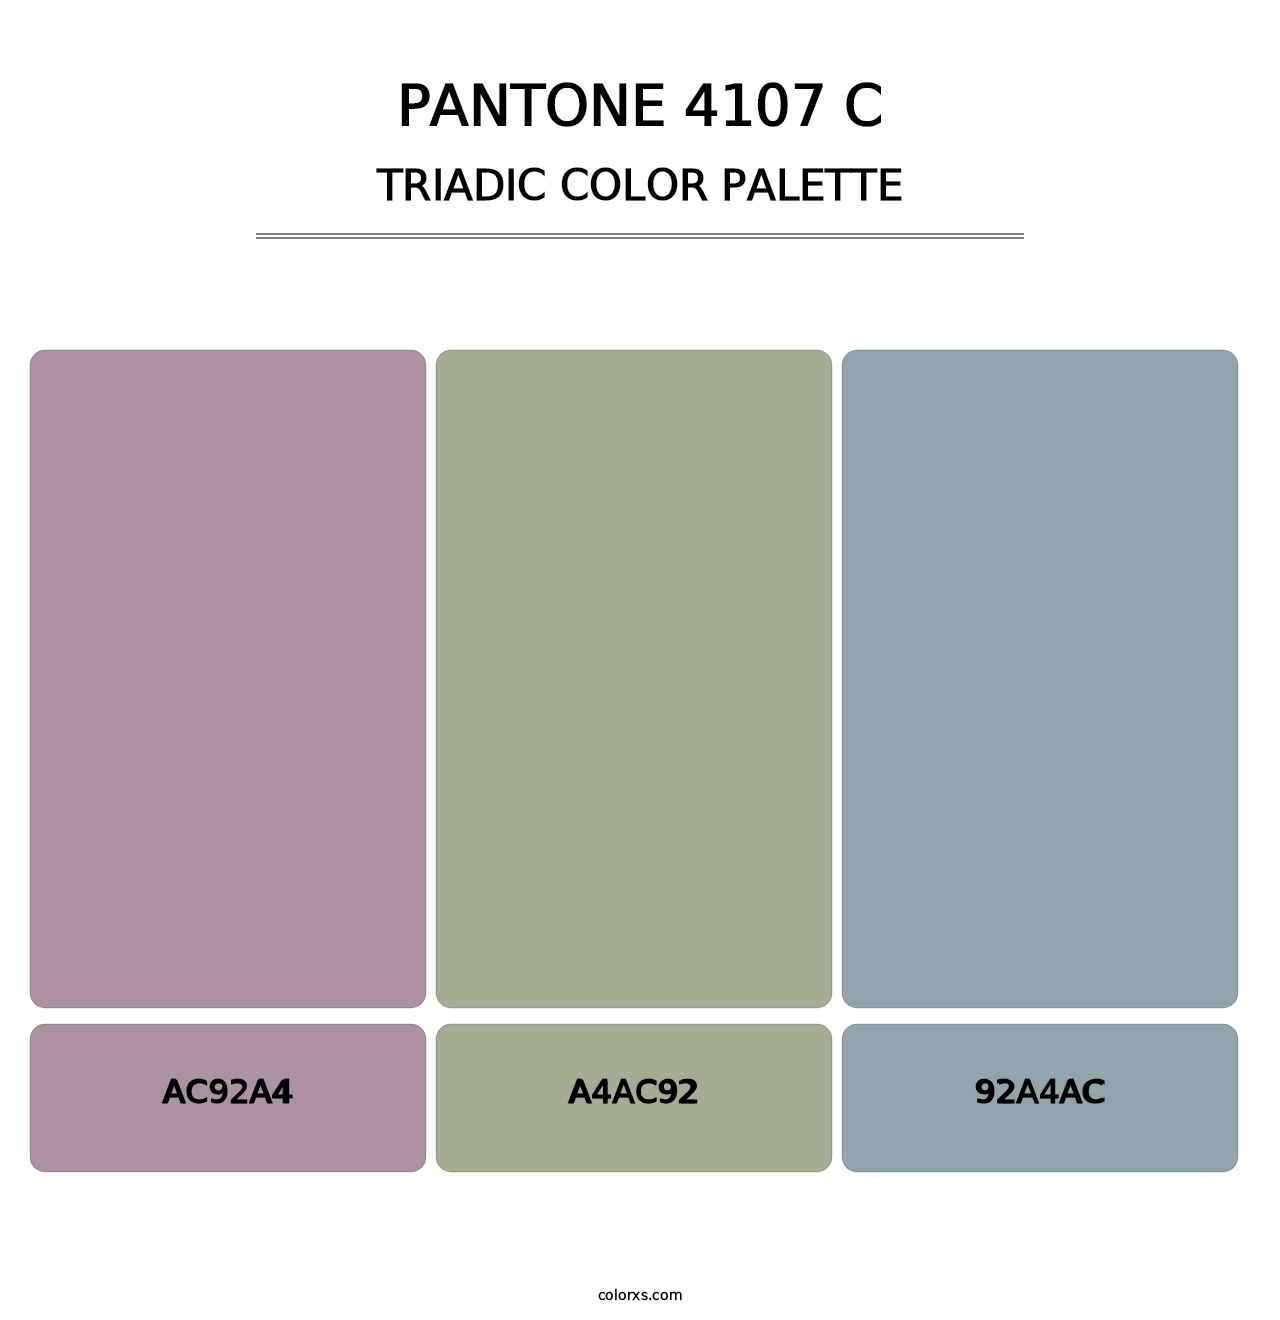 PANTONE 4107 C - Triadic Color Palette